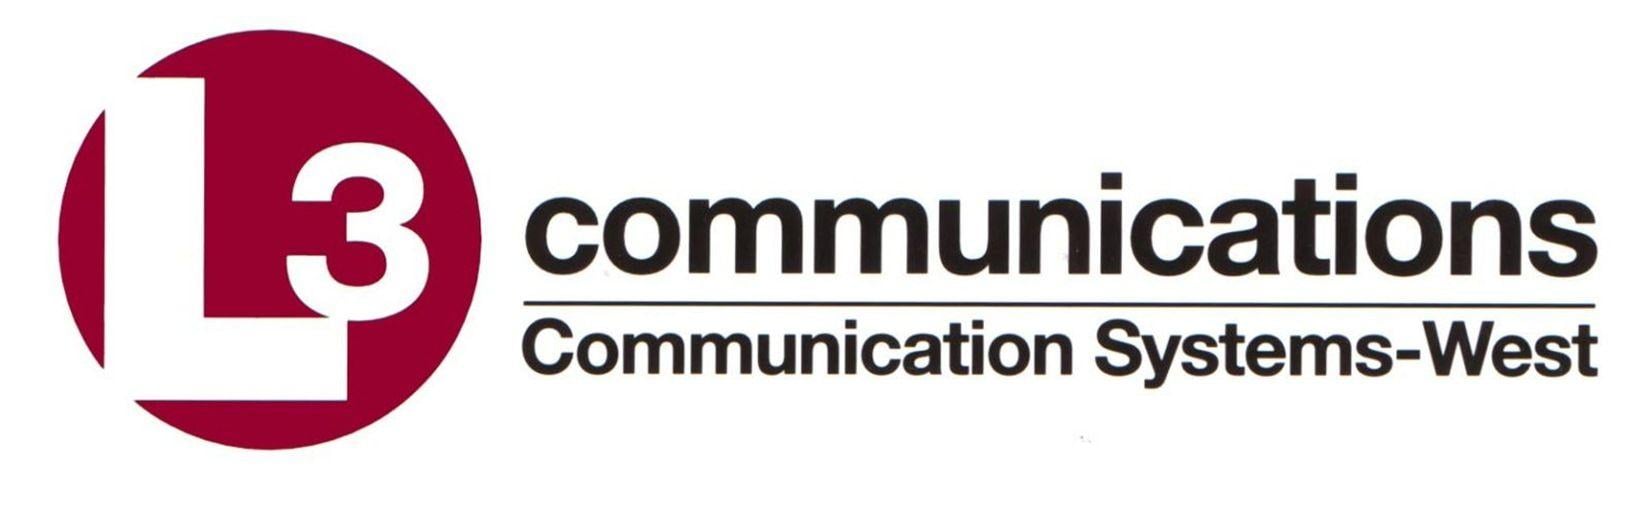 L-3 Communications Logo - l3-communications-logo - PreScouter